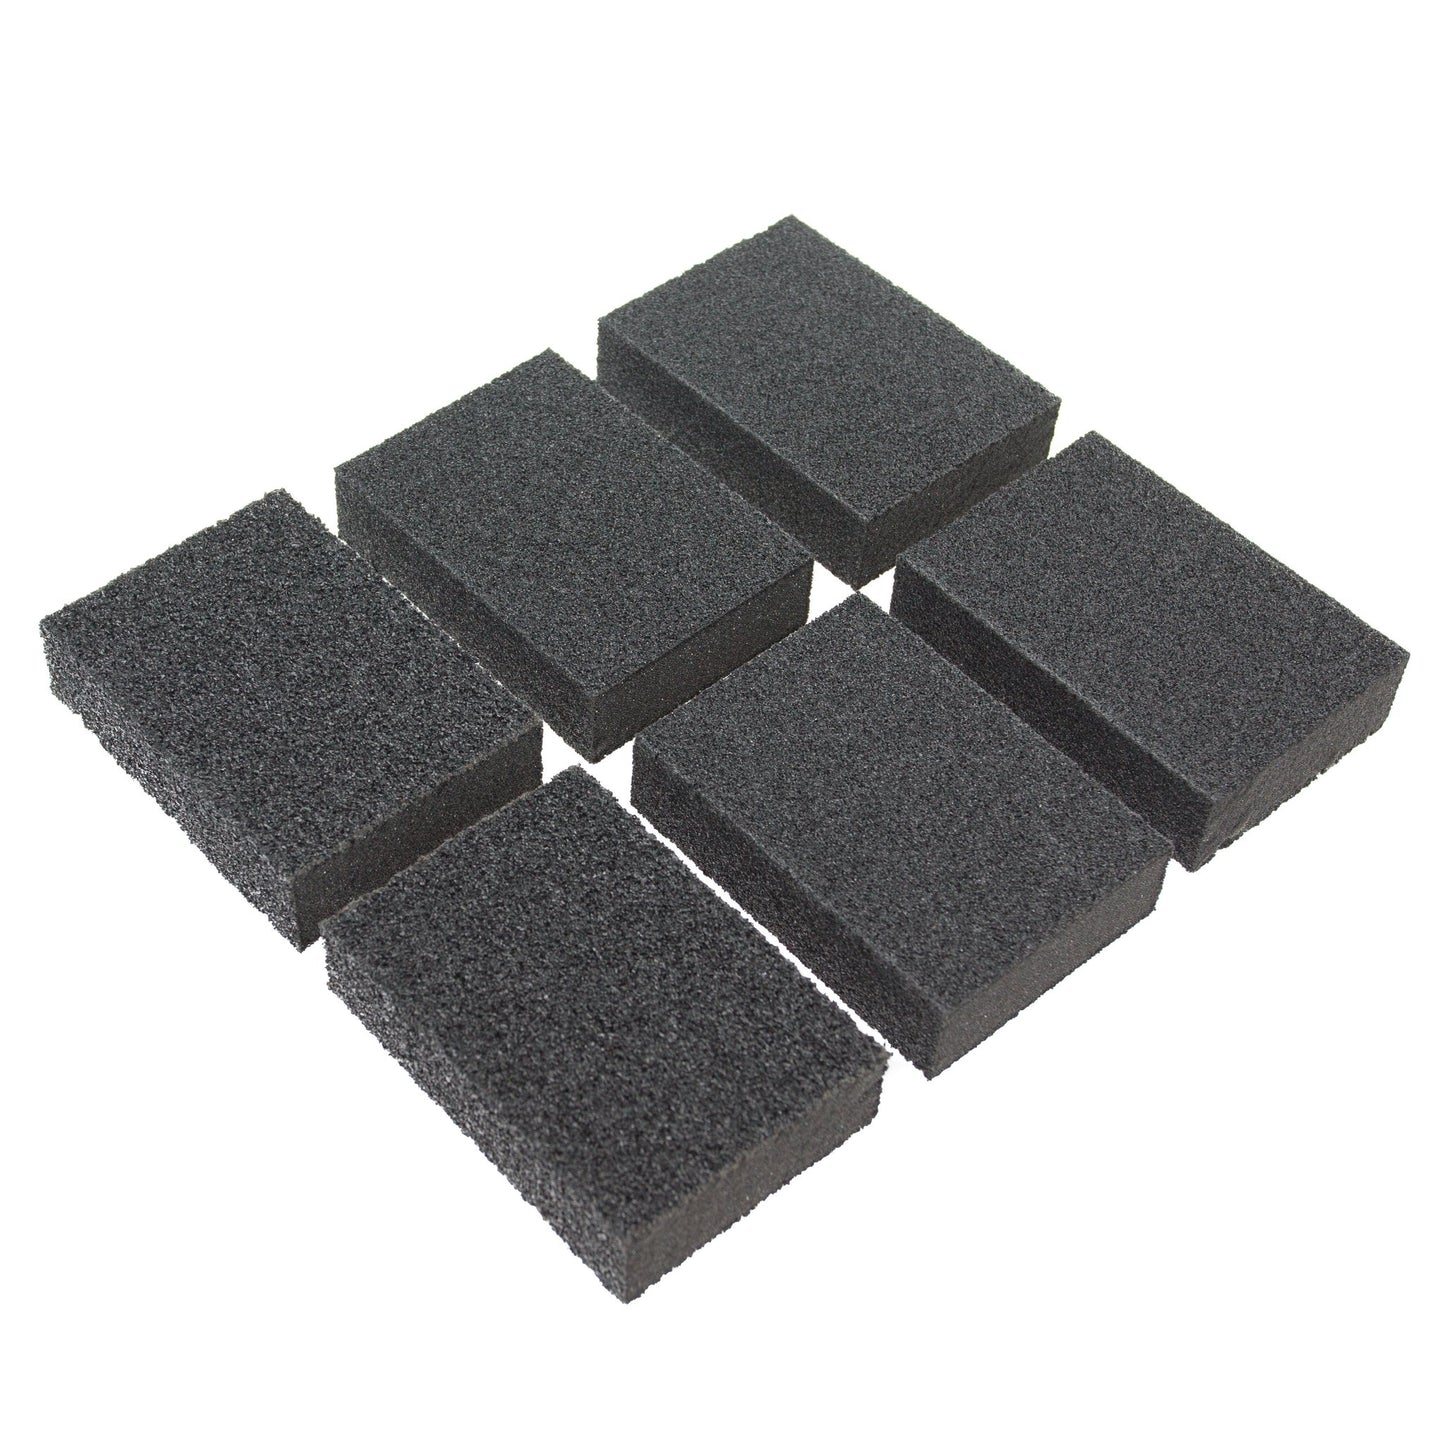 Abrasive Sanding Sponge Blocks